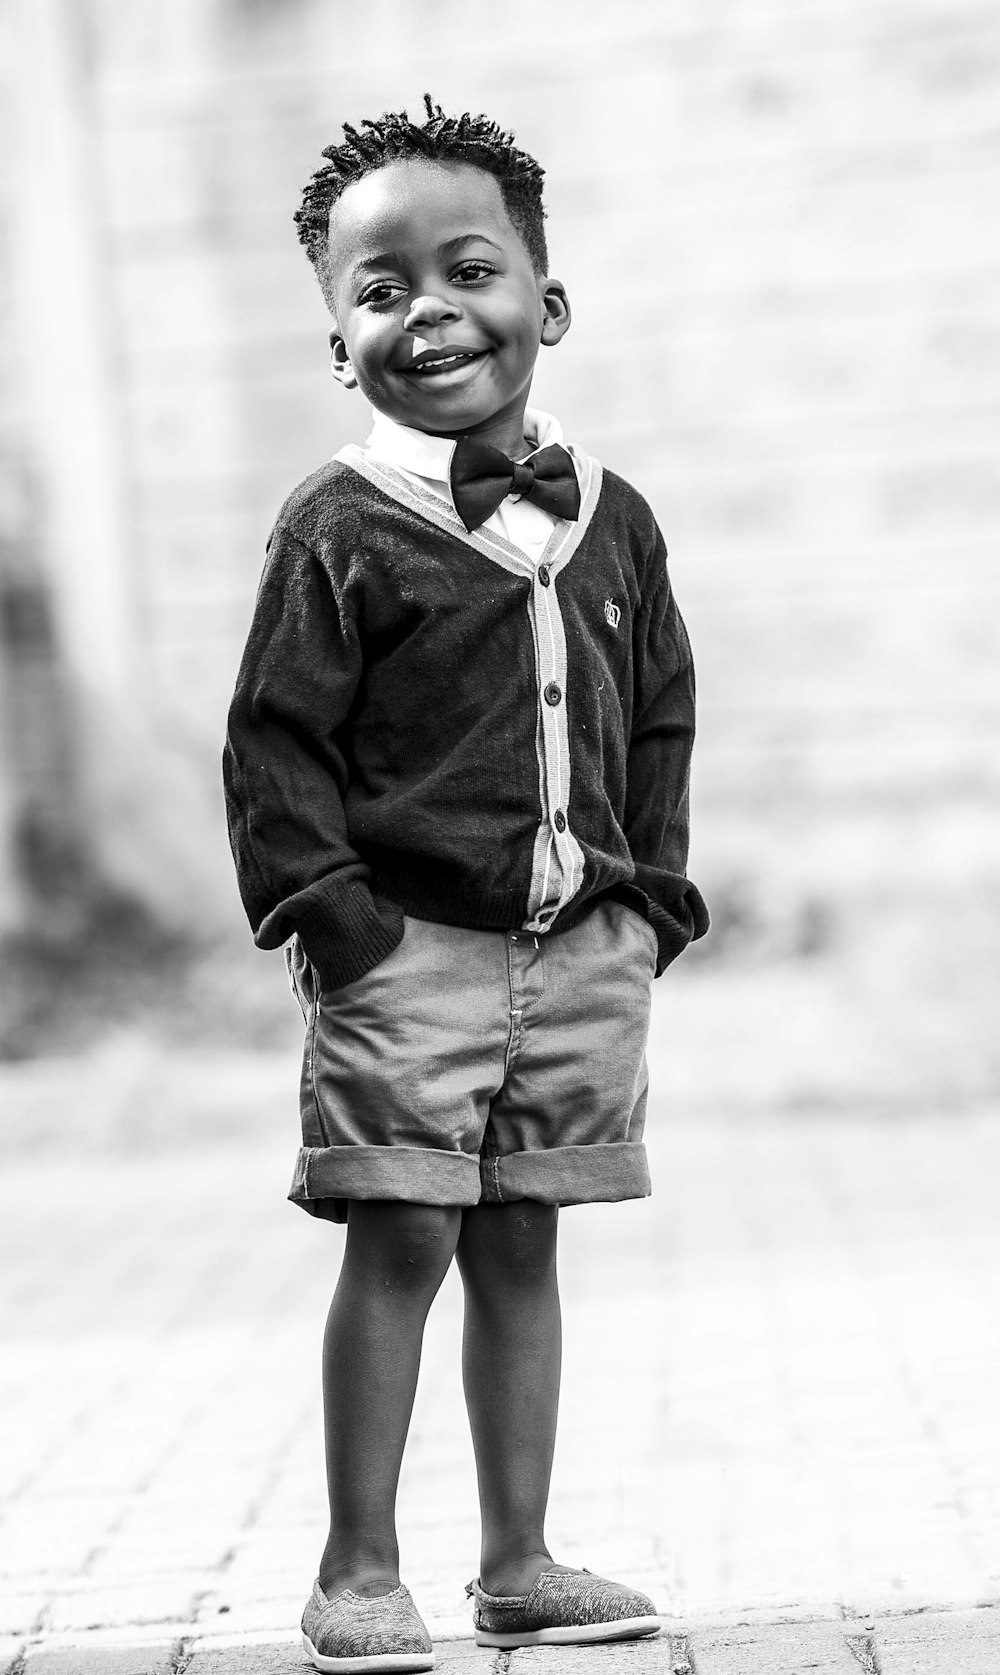 黒のボタンアップカーディガンとショートパンツの男の子のグレースケール写真